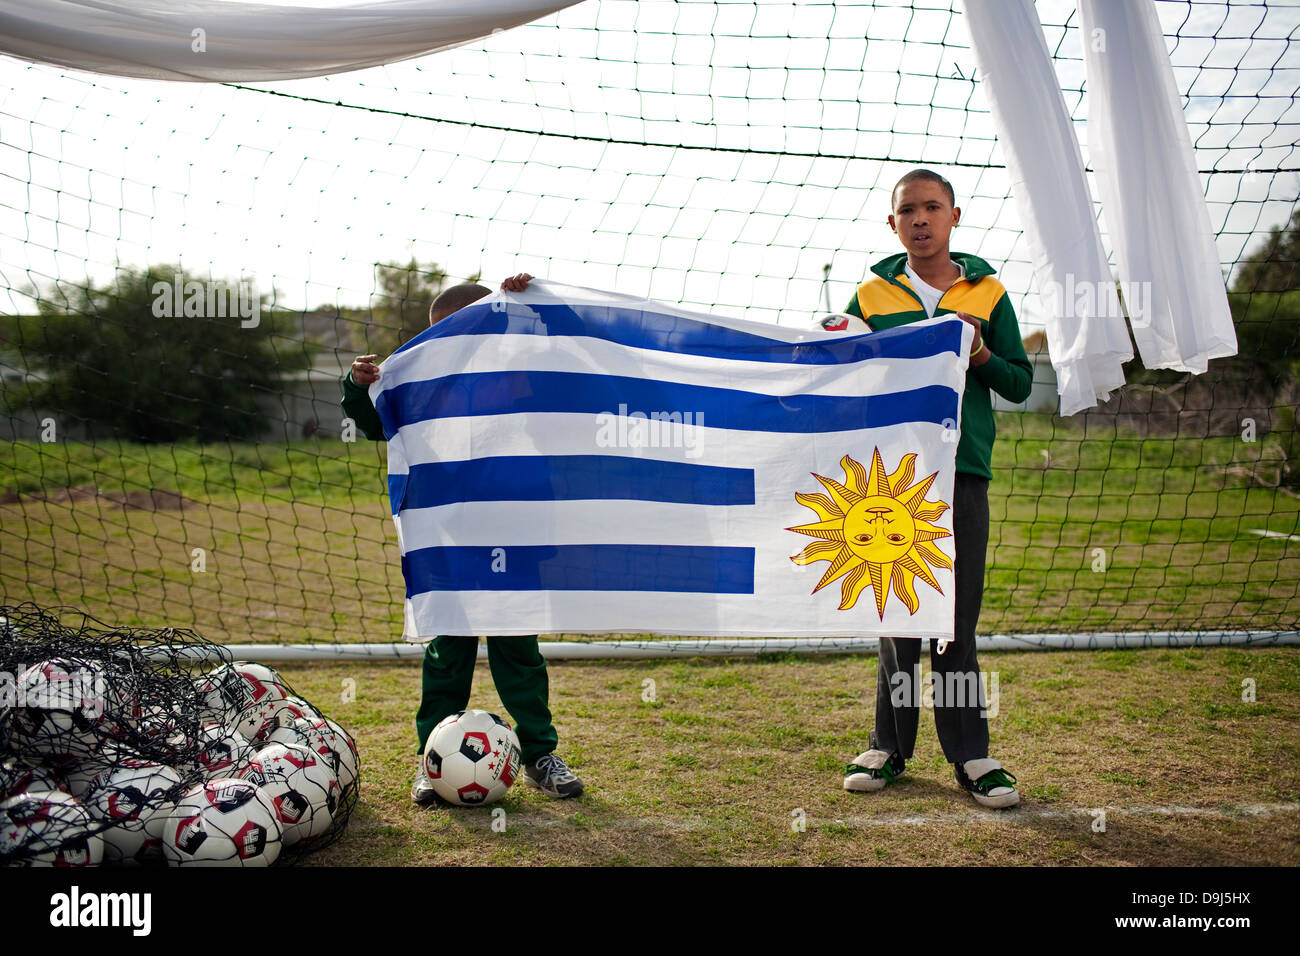 Banderas En La Pelota De Fútbol De Uruguay Fotos, retratos, imágenes y  fotografía de archivo libres de derecho. Image 27713572